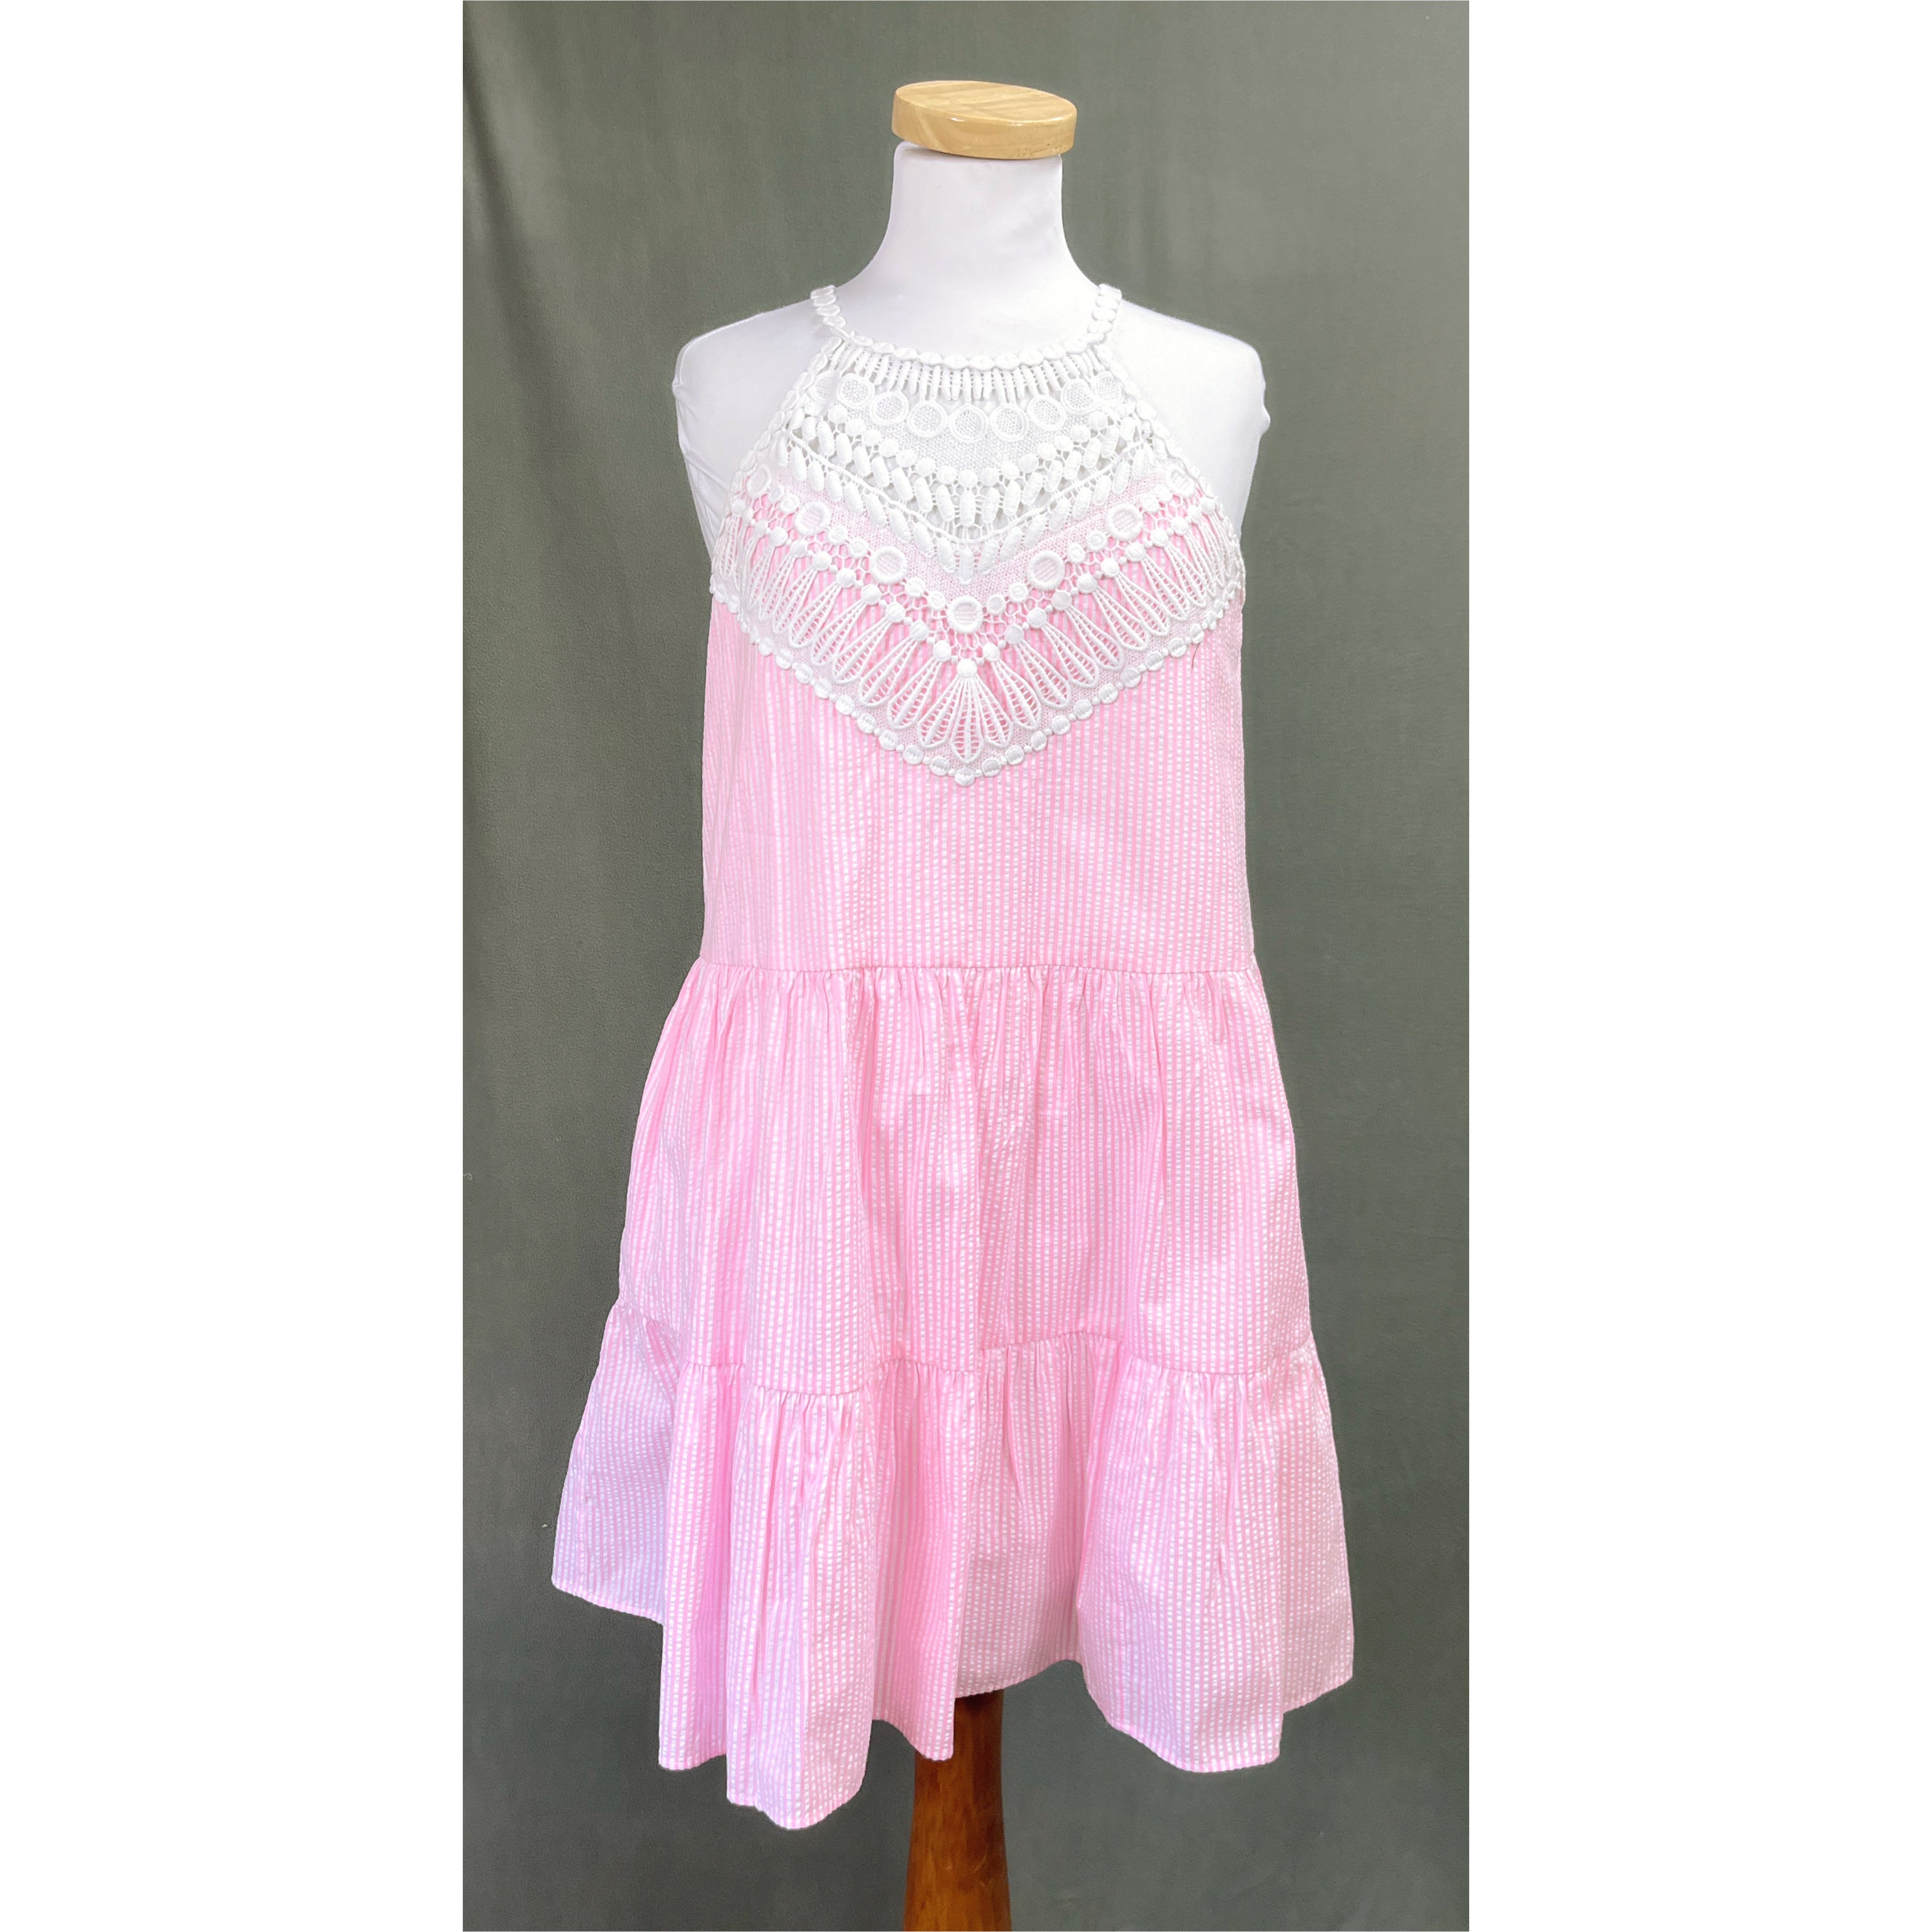 Lilly Pulitzer pink seersucker Britt dress, size 4